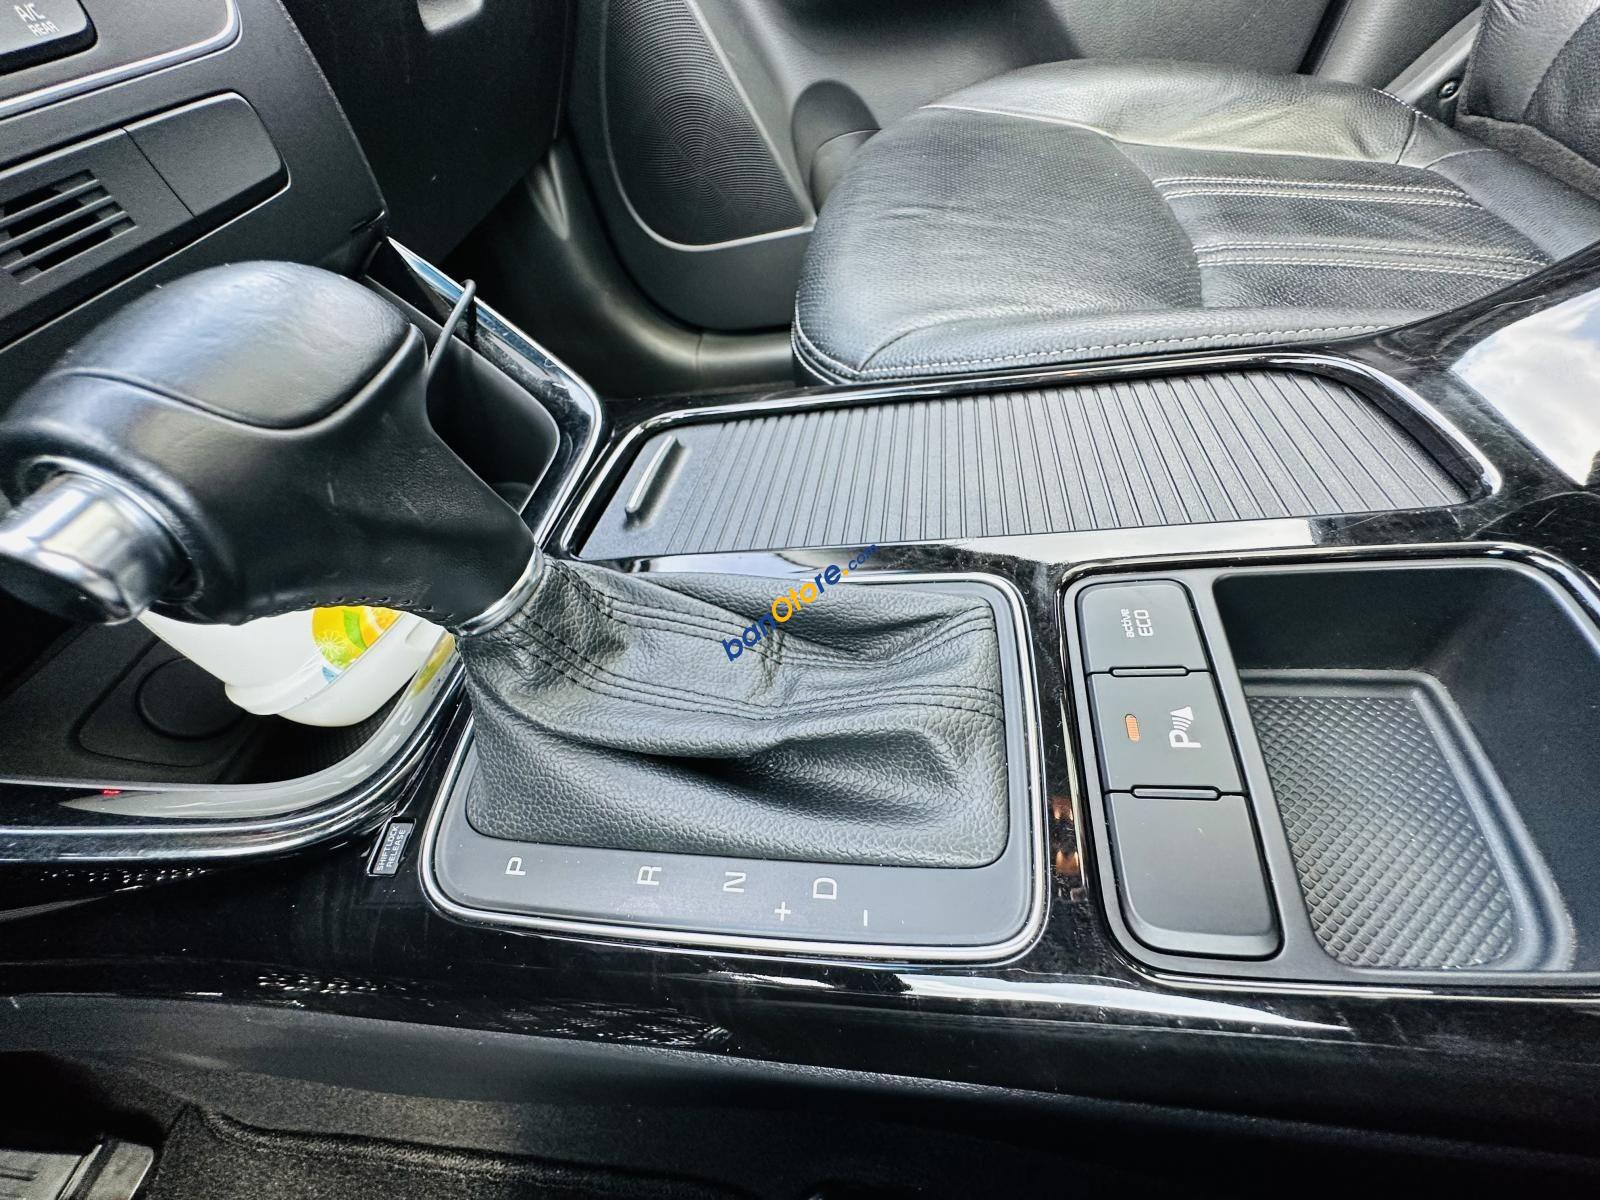 Kia Sorento 2014 - Model 2015, bản full options - Xe đẹp xuất sắc, ít có đối thủ